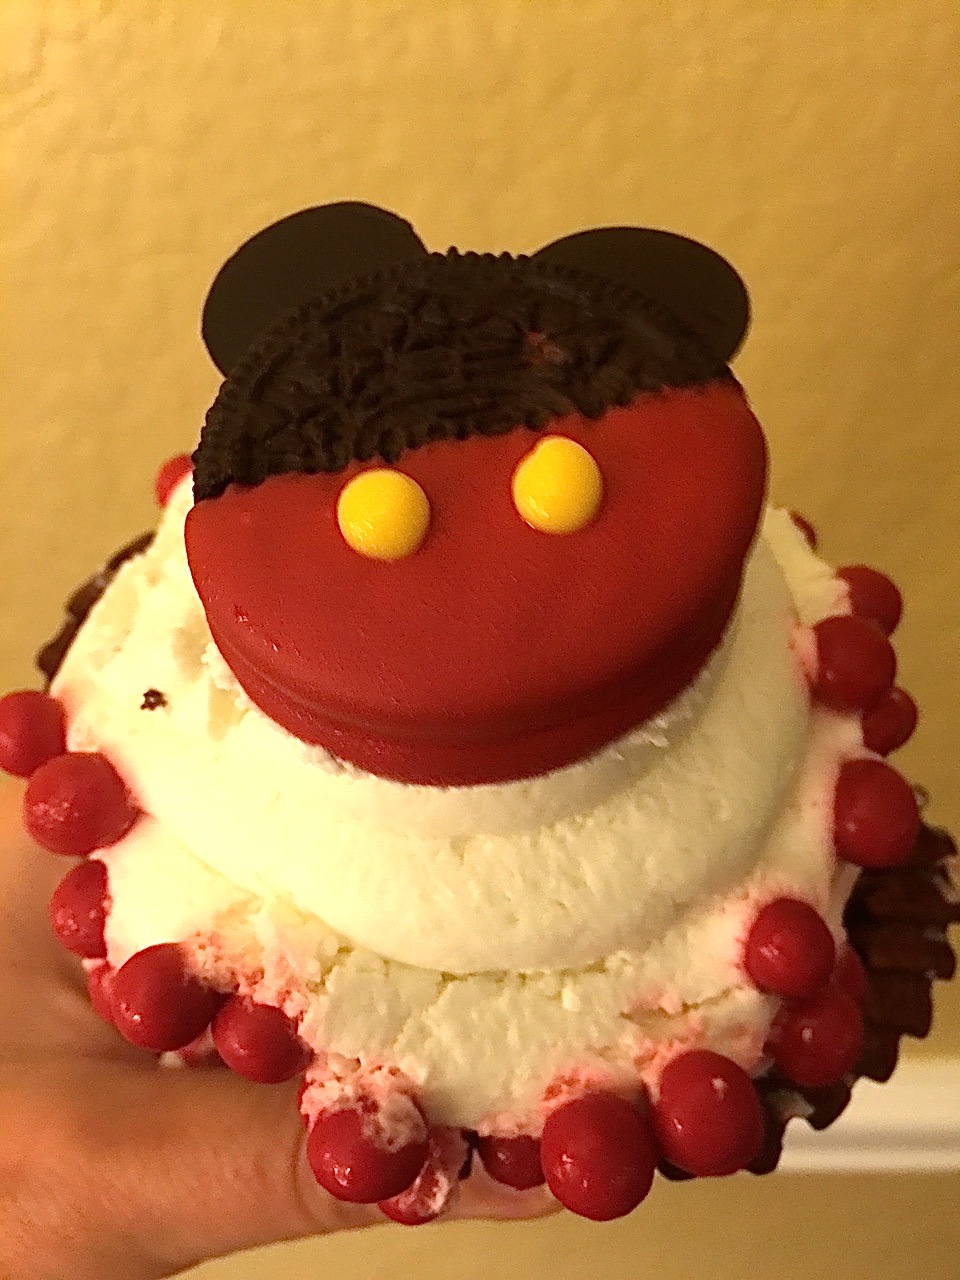 Oreo Cupcake